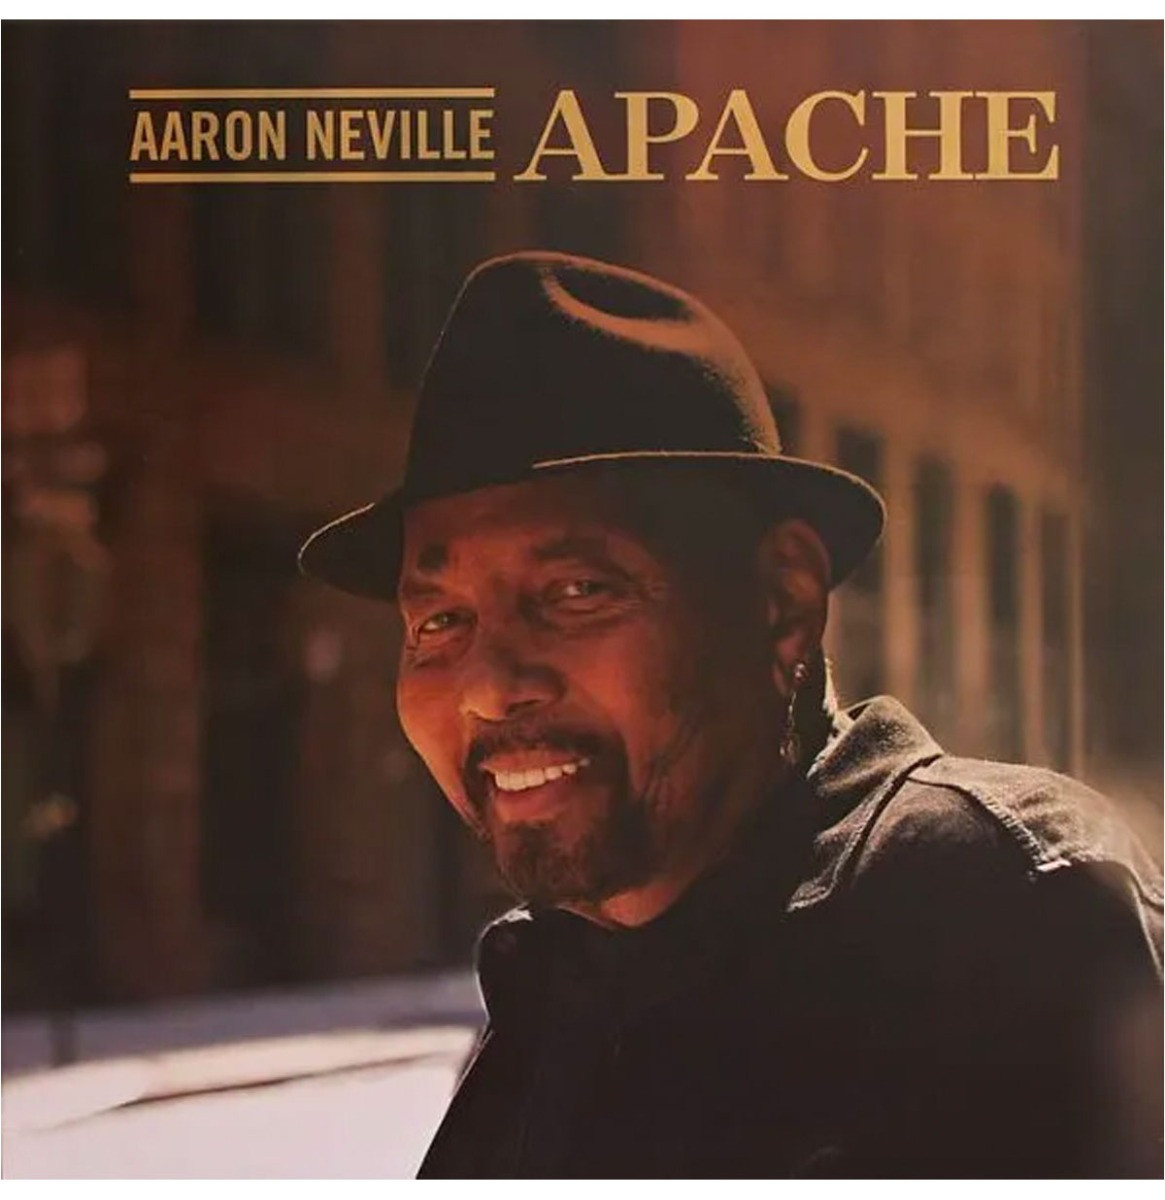 Aaron Neville - Apache (Barnes & Noble Exclusive) LP